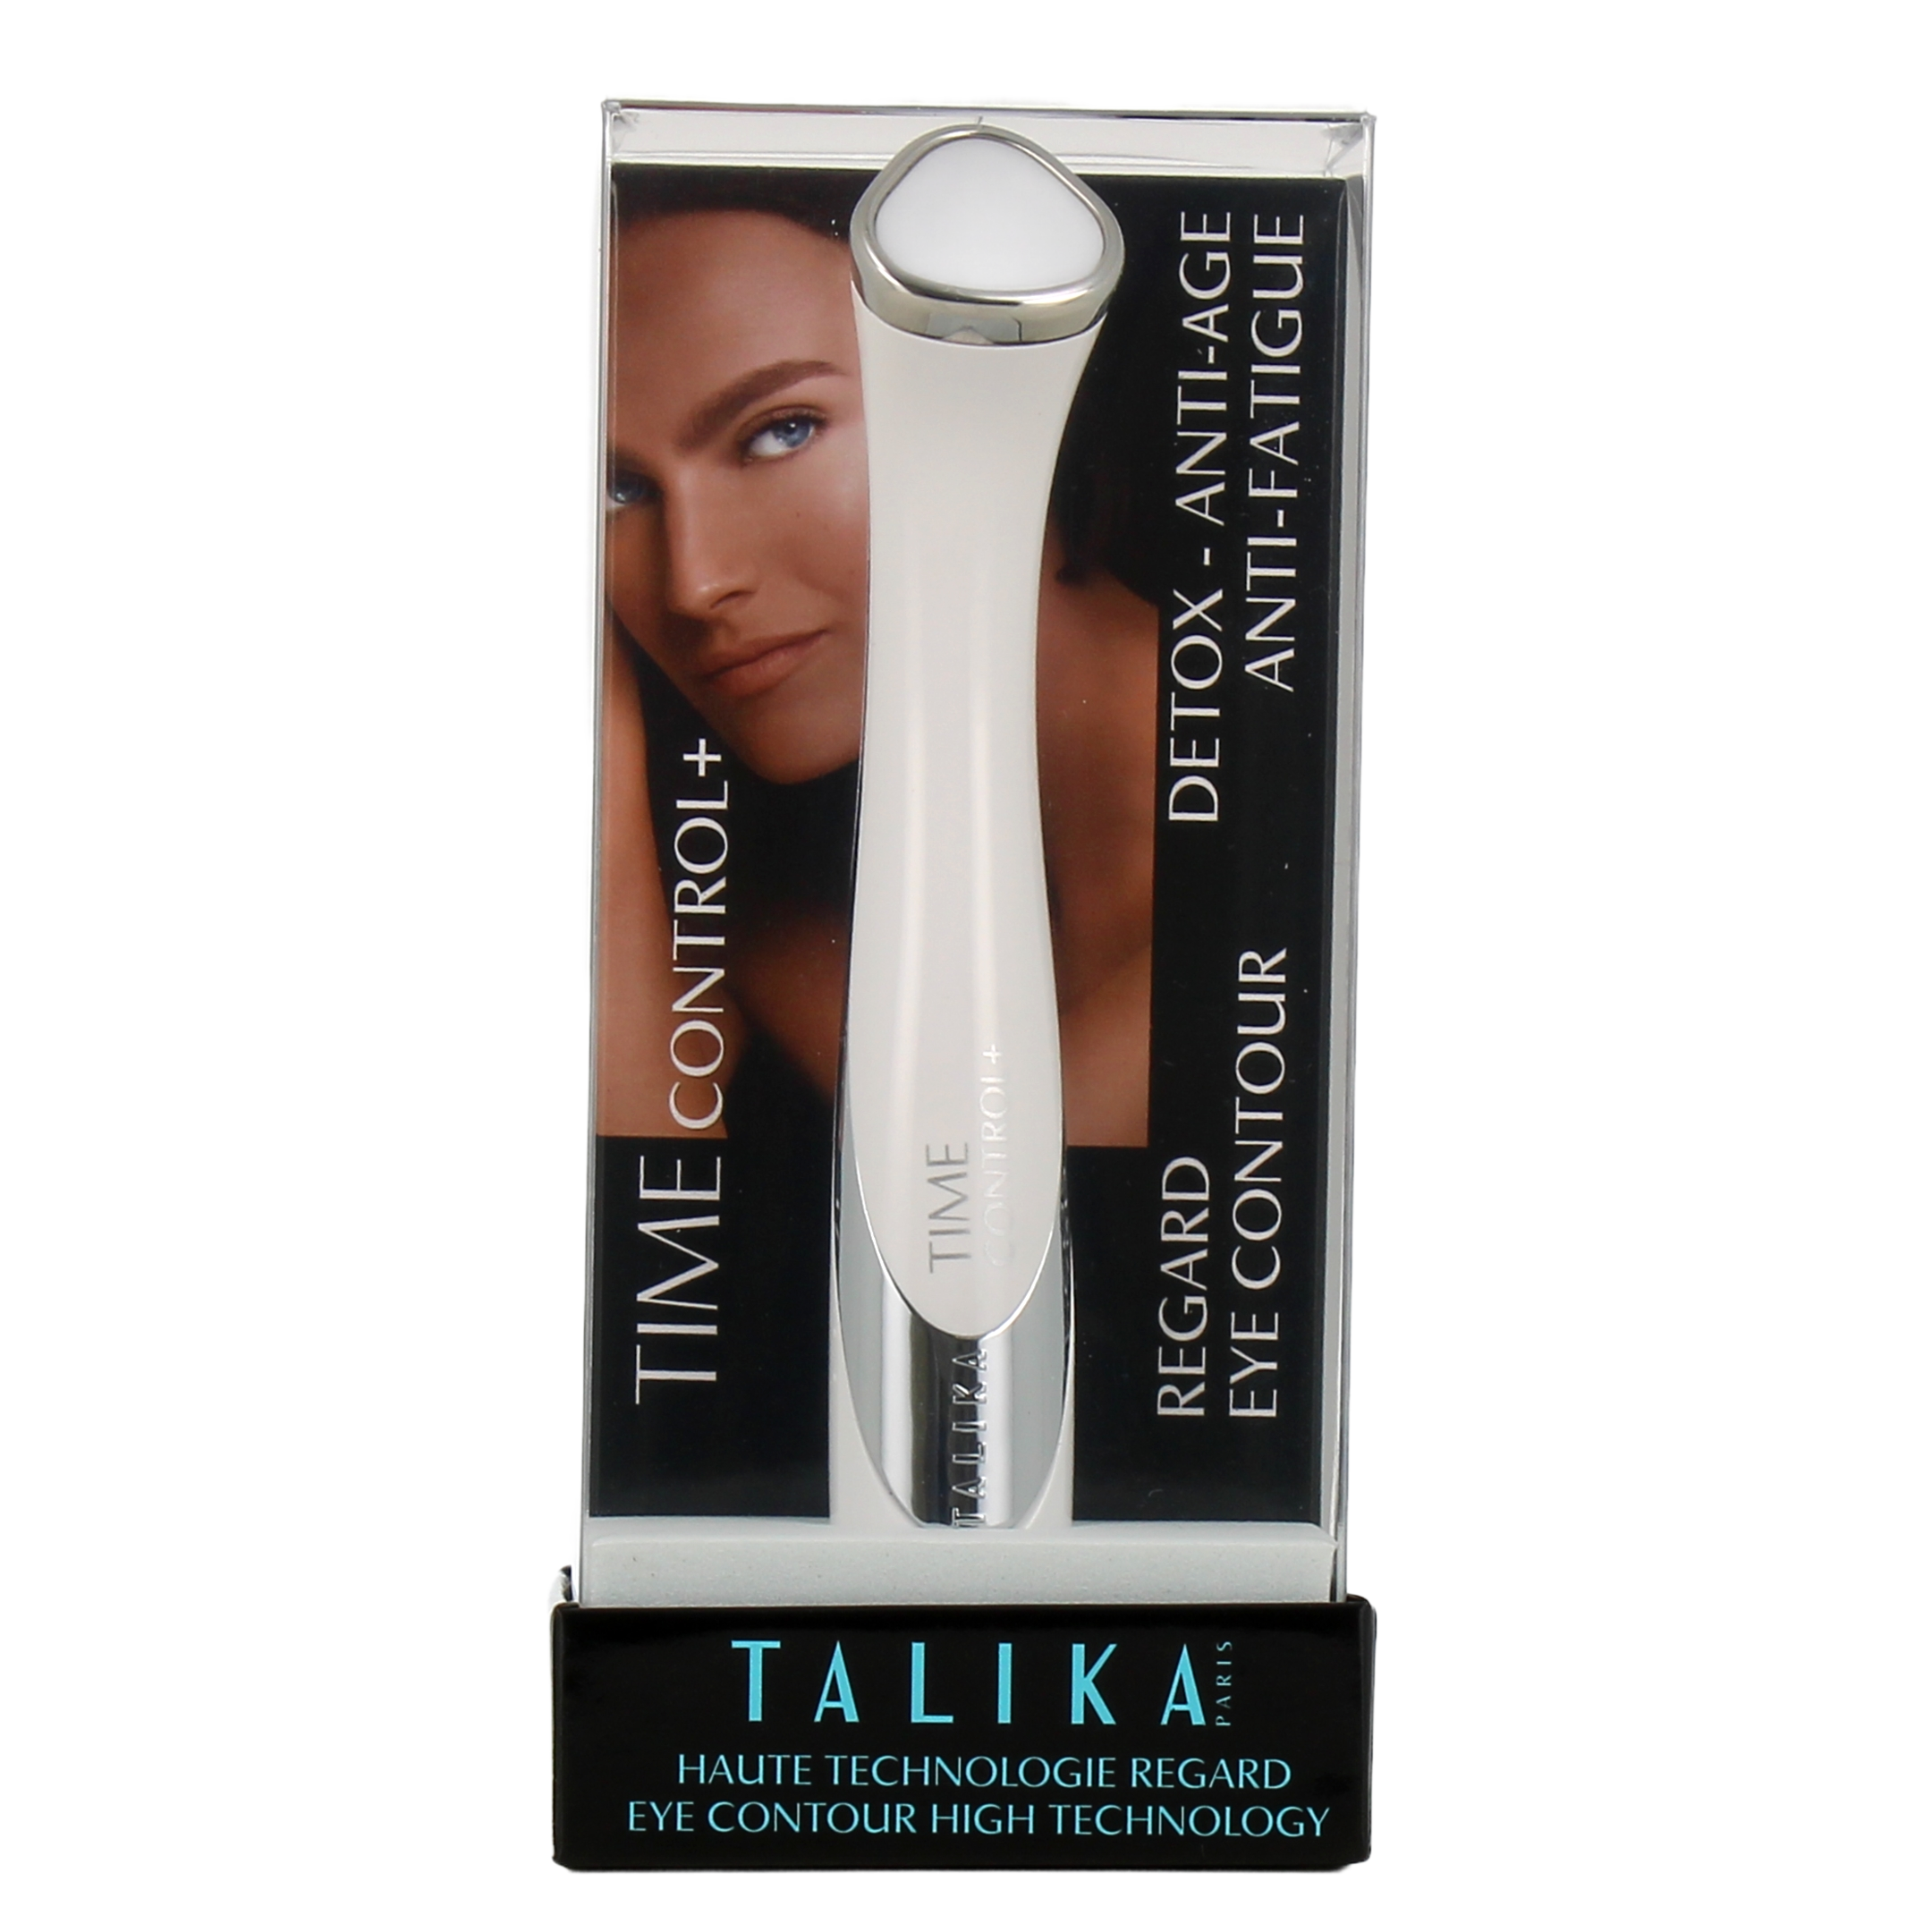 Talika Time Control+ Eye Contour High Technology - Eye Contour Device